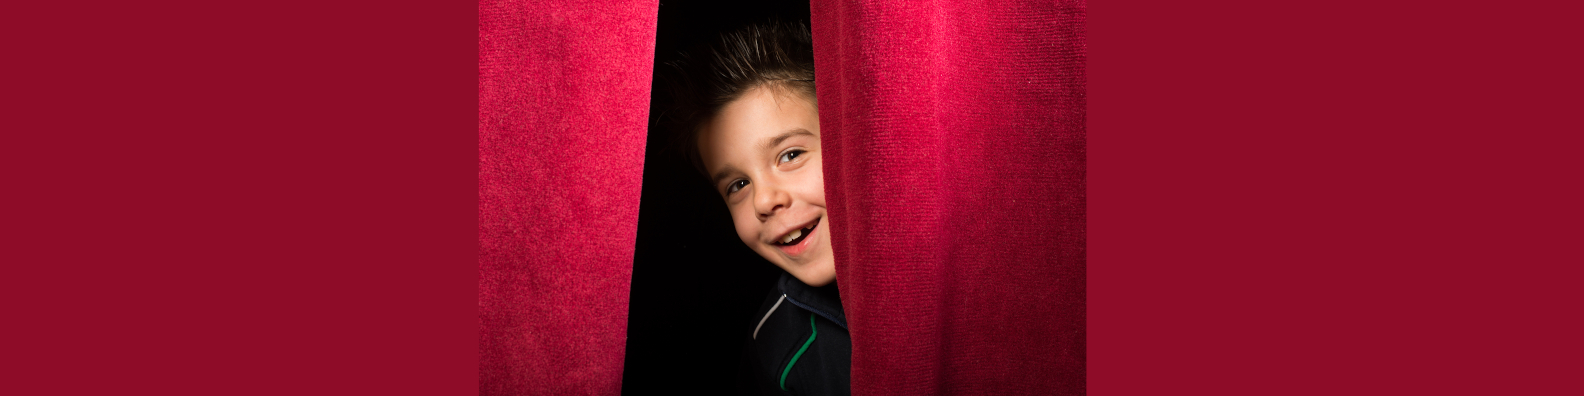 Bild: Schüler schaut hinter Theatervorhang heraus